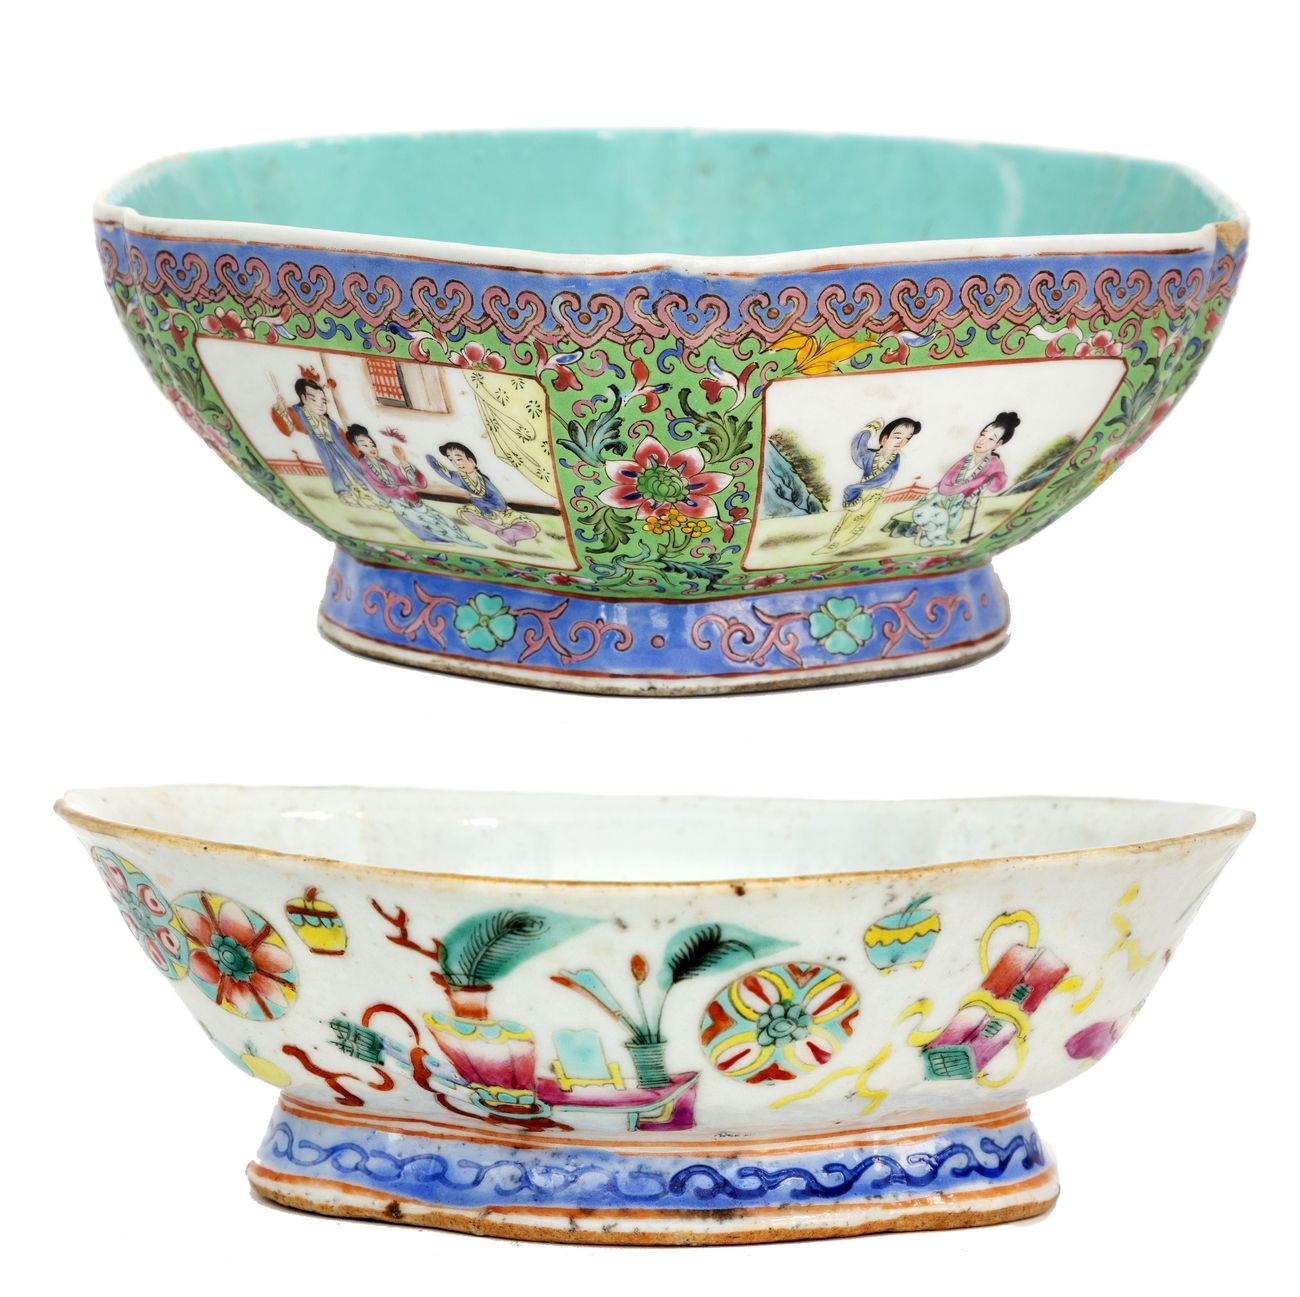 Null China, 19.-20. Jahrhundert
Zwei Porzellanschalen mit einem Dekor aus rosafa&hellip;